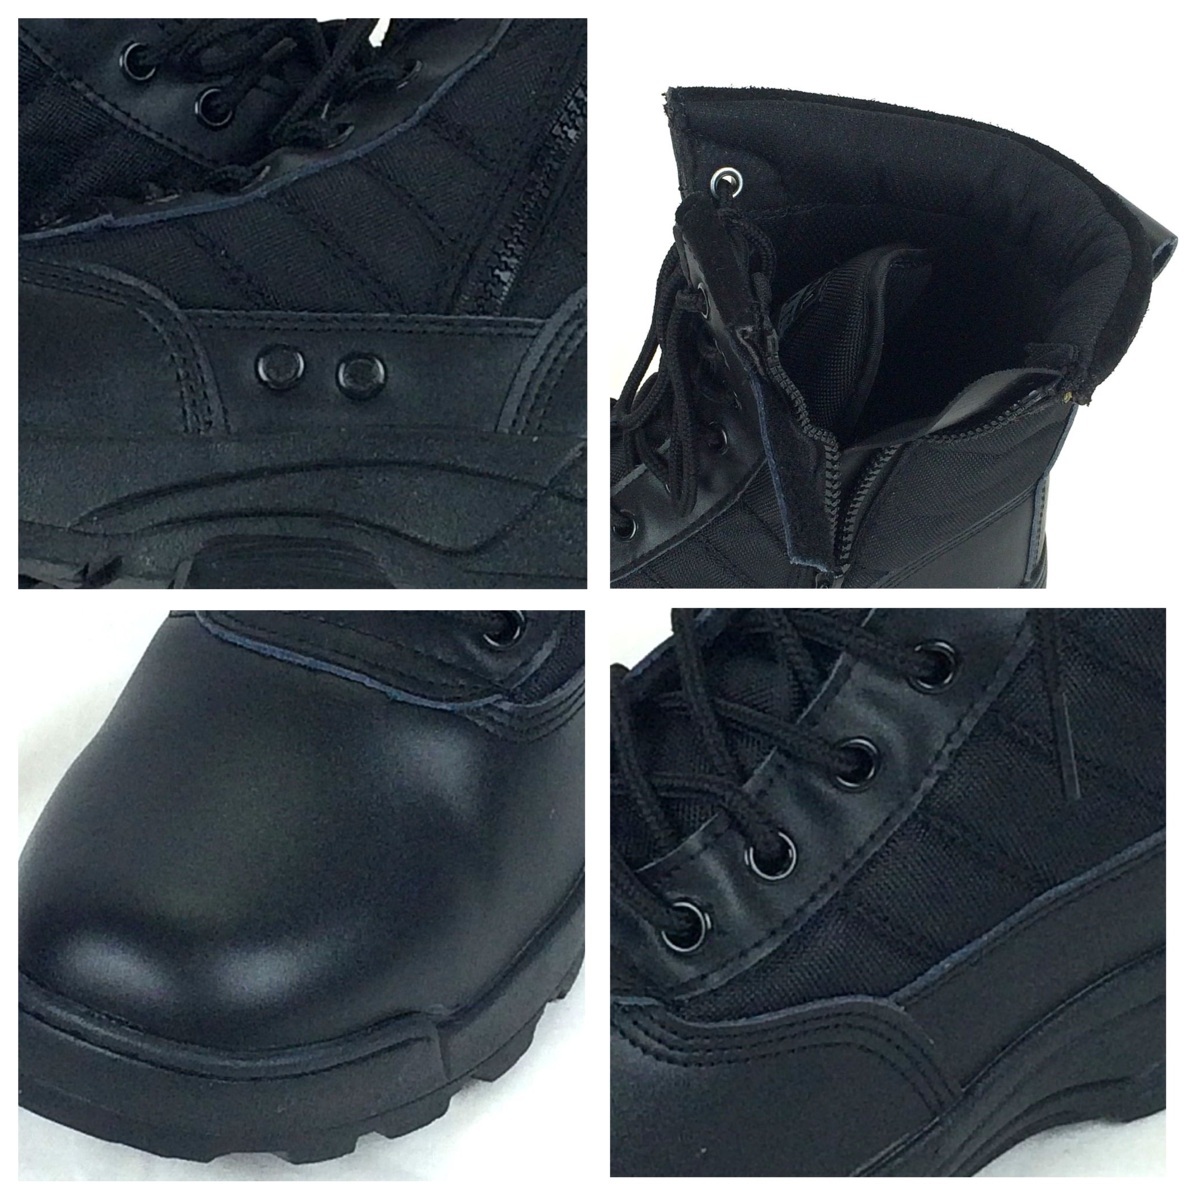 BK 26.5cm милитари ботинки Tacty karu ботинки combat ботинки rider ботинки рабочая обувь обувь боковой молния скумбиря ge мужской ботинки 